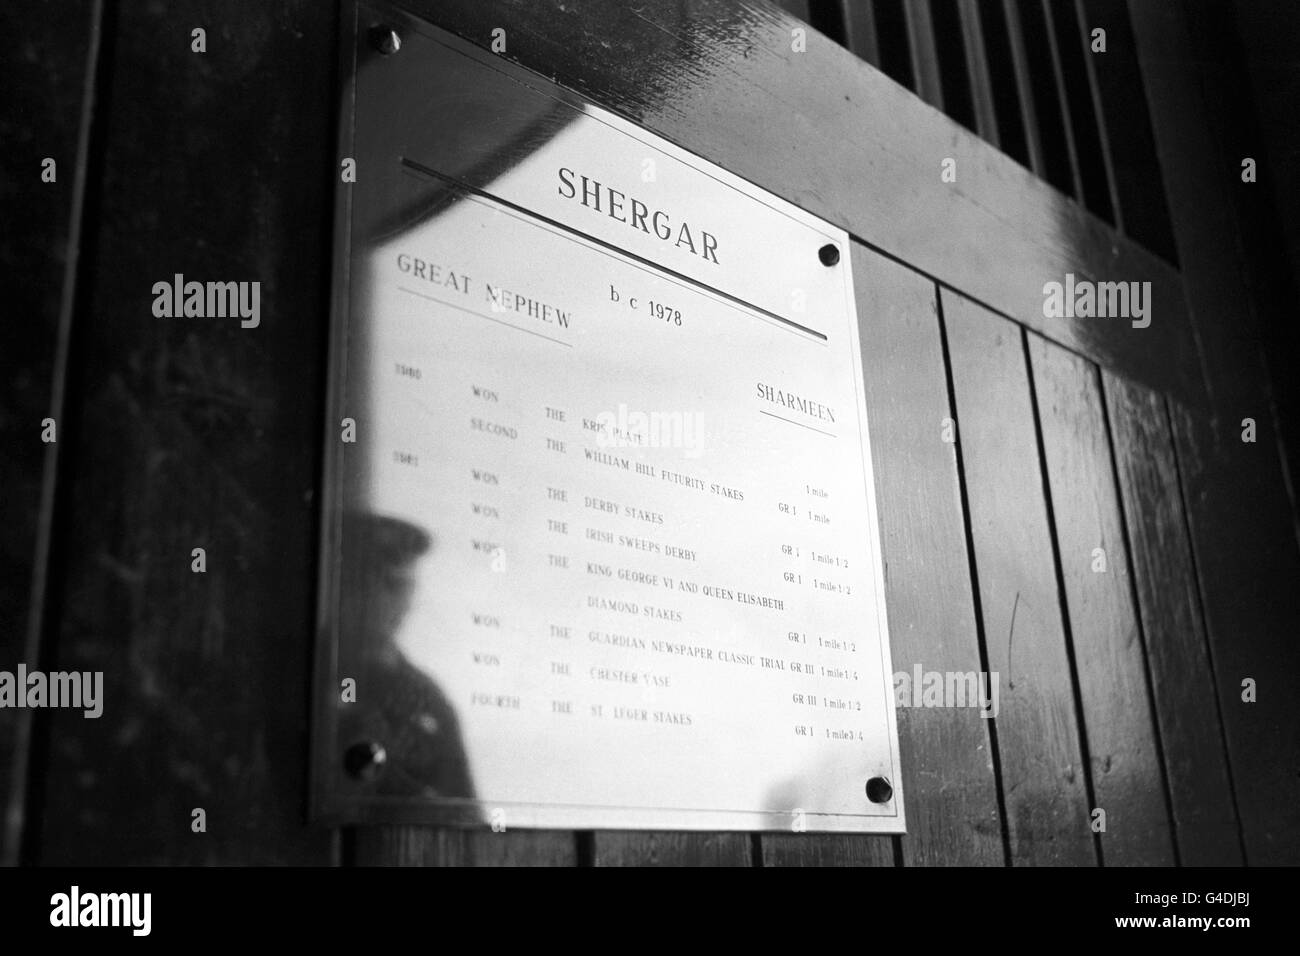 Immagine della targa Shergar's stable box da cui è stato preso martedì 8 febbraio presso la fattoria di prigionieri a Ballymany, County Kildare, Repubblica d'Irlanda. Shergar non è mai stato trovato e nessuno era stato accusato del furto. Foto Stock